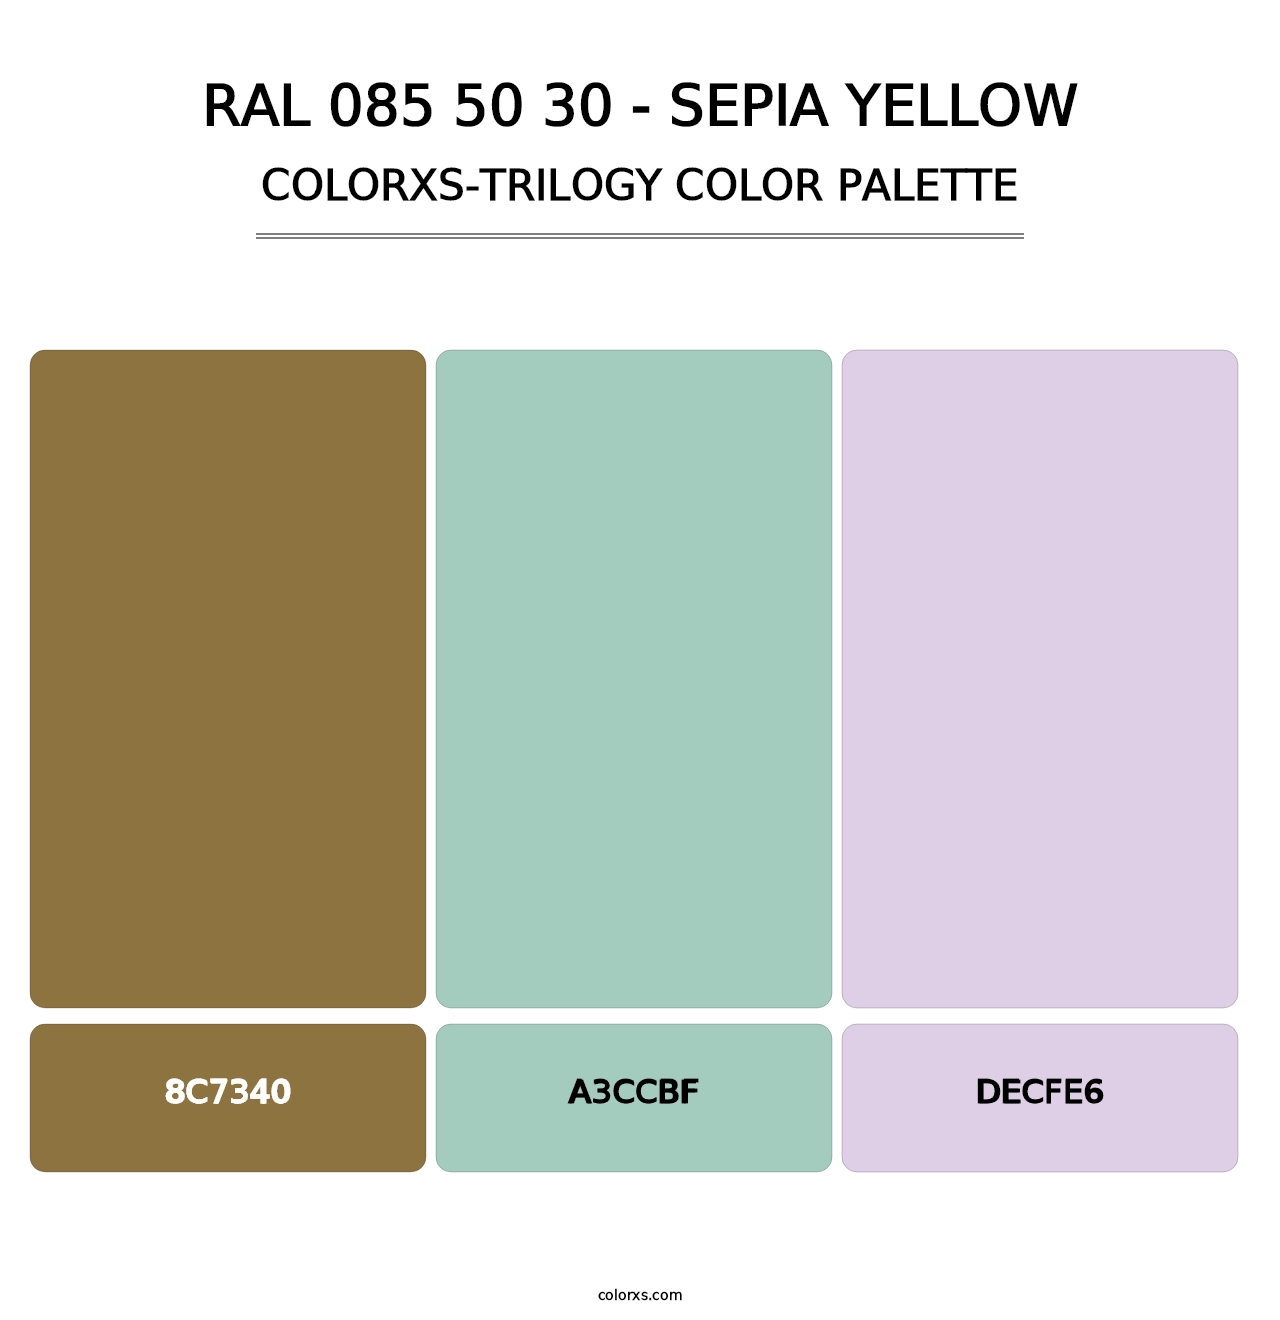 RAL 085 50 30 - Sepia Yellow - Colorxs Trilogy Palette